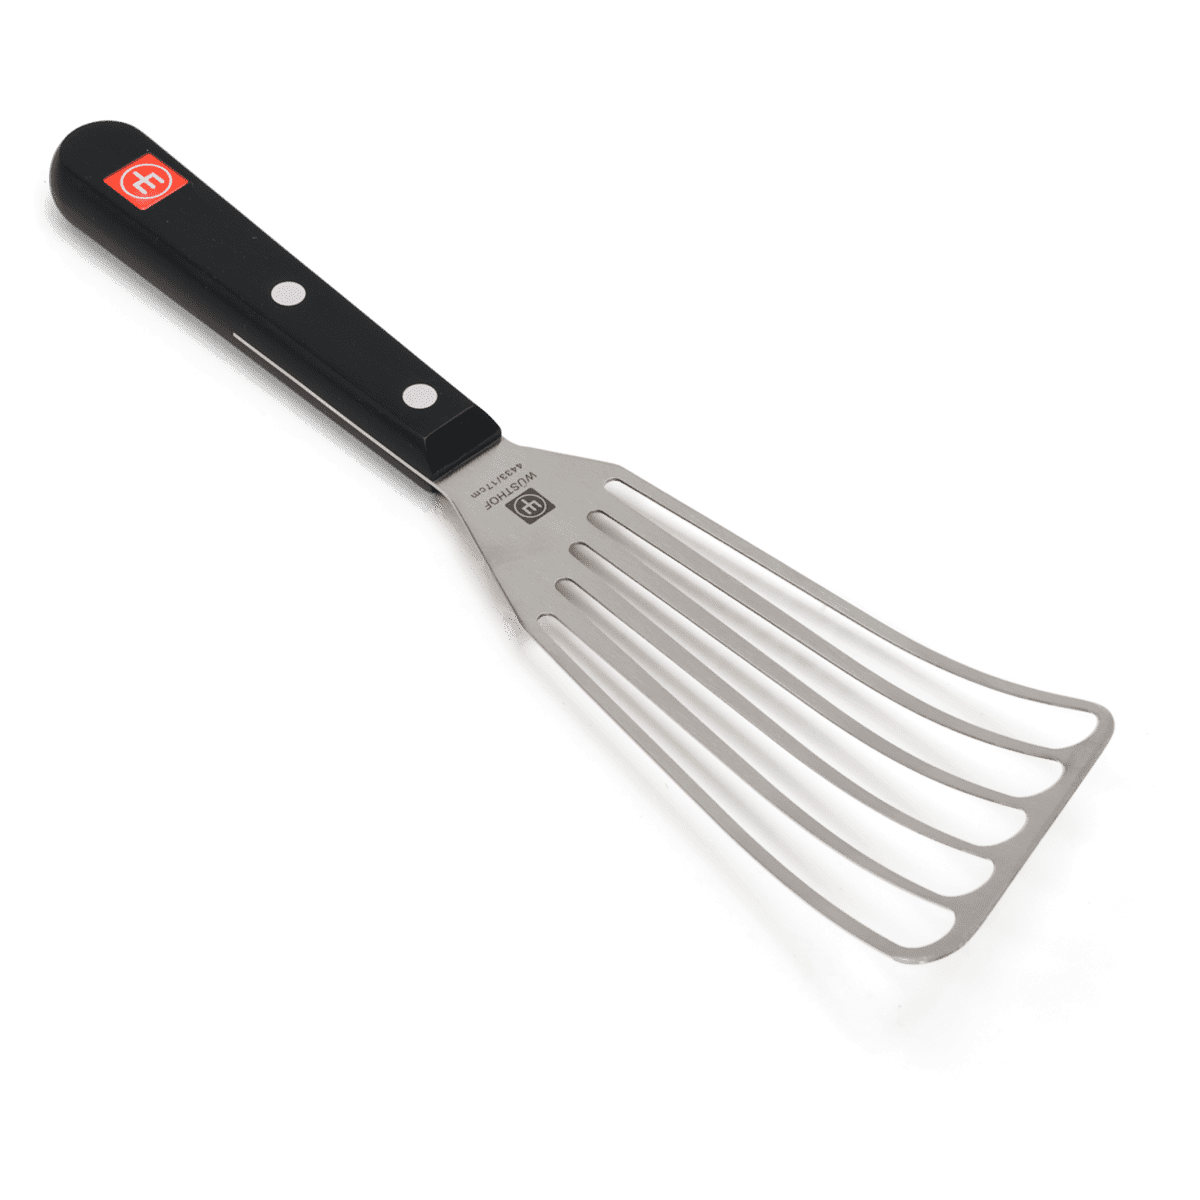 metal turner spatula